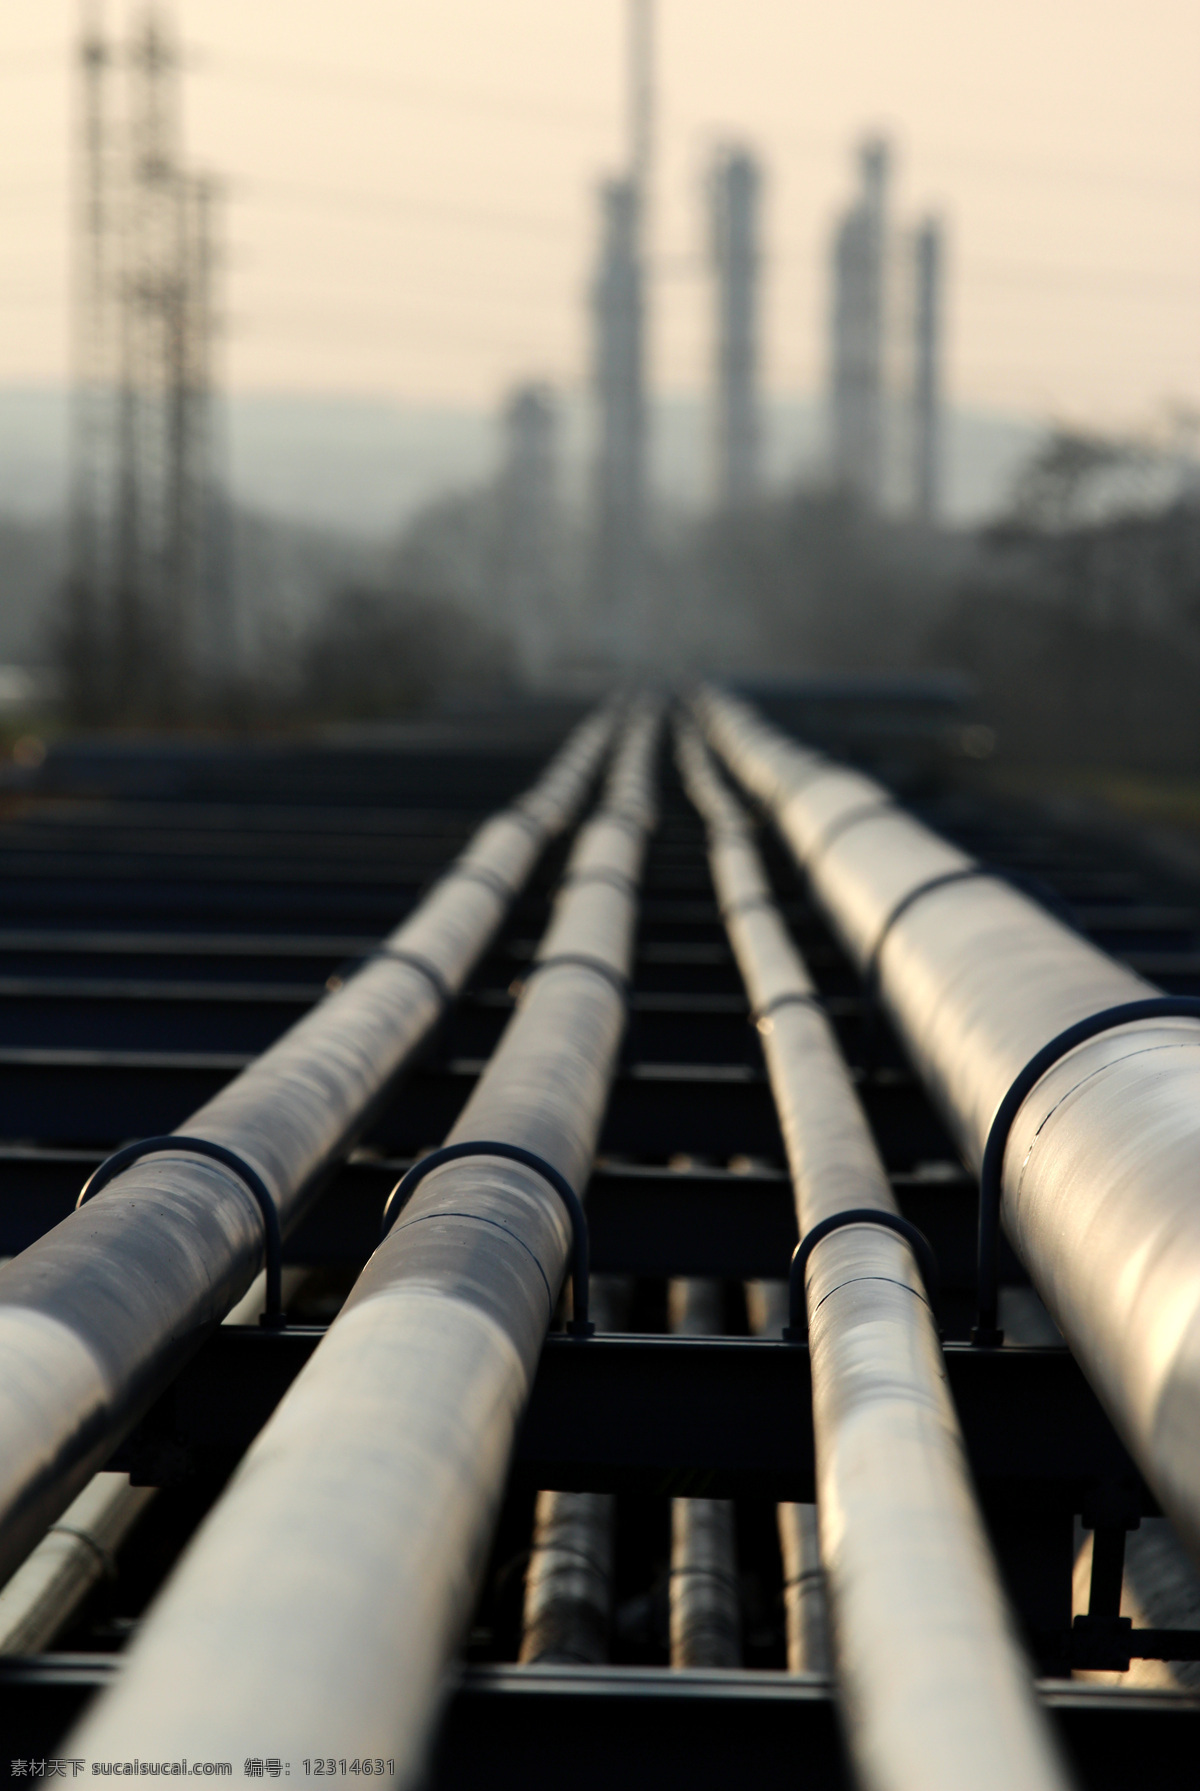 石油 管道 石油管道 石油工业 工业生产 开采石油 现代科技 其他类别 生活百科